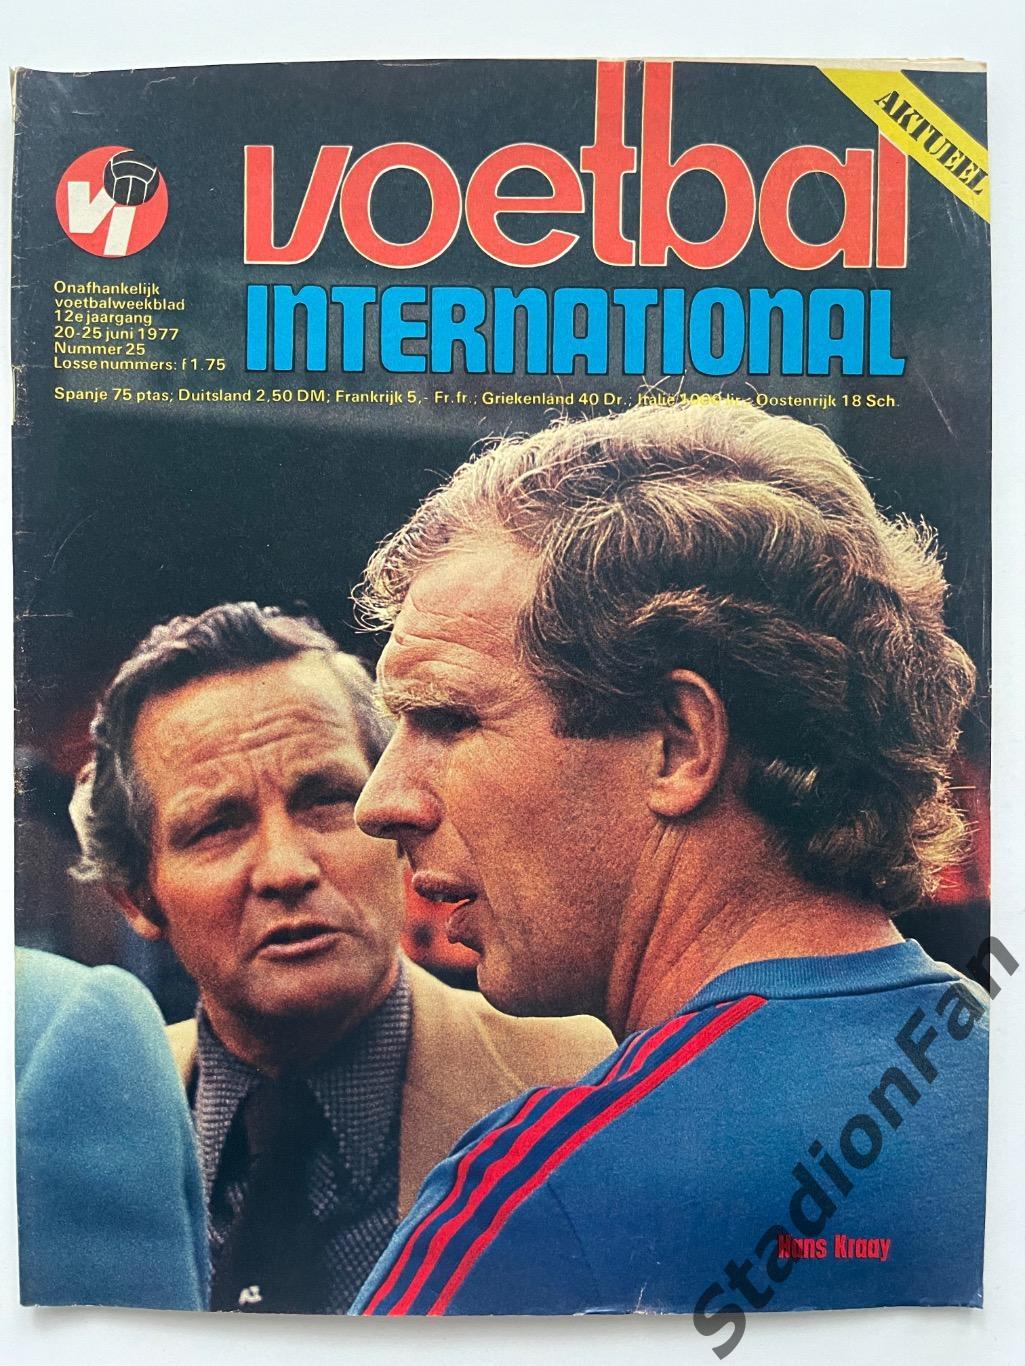 Журнал Voetbal nr.25 - 1977 год.